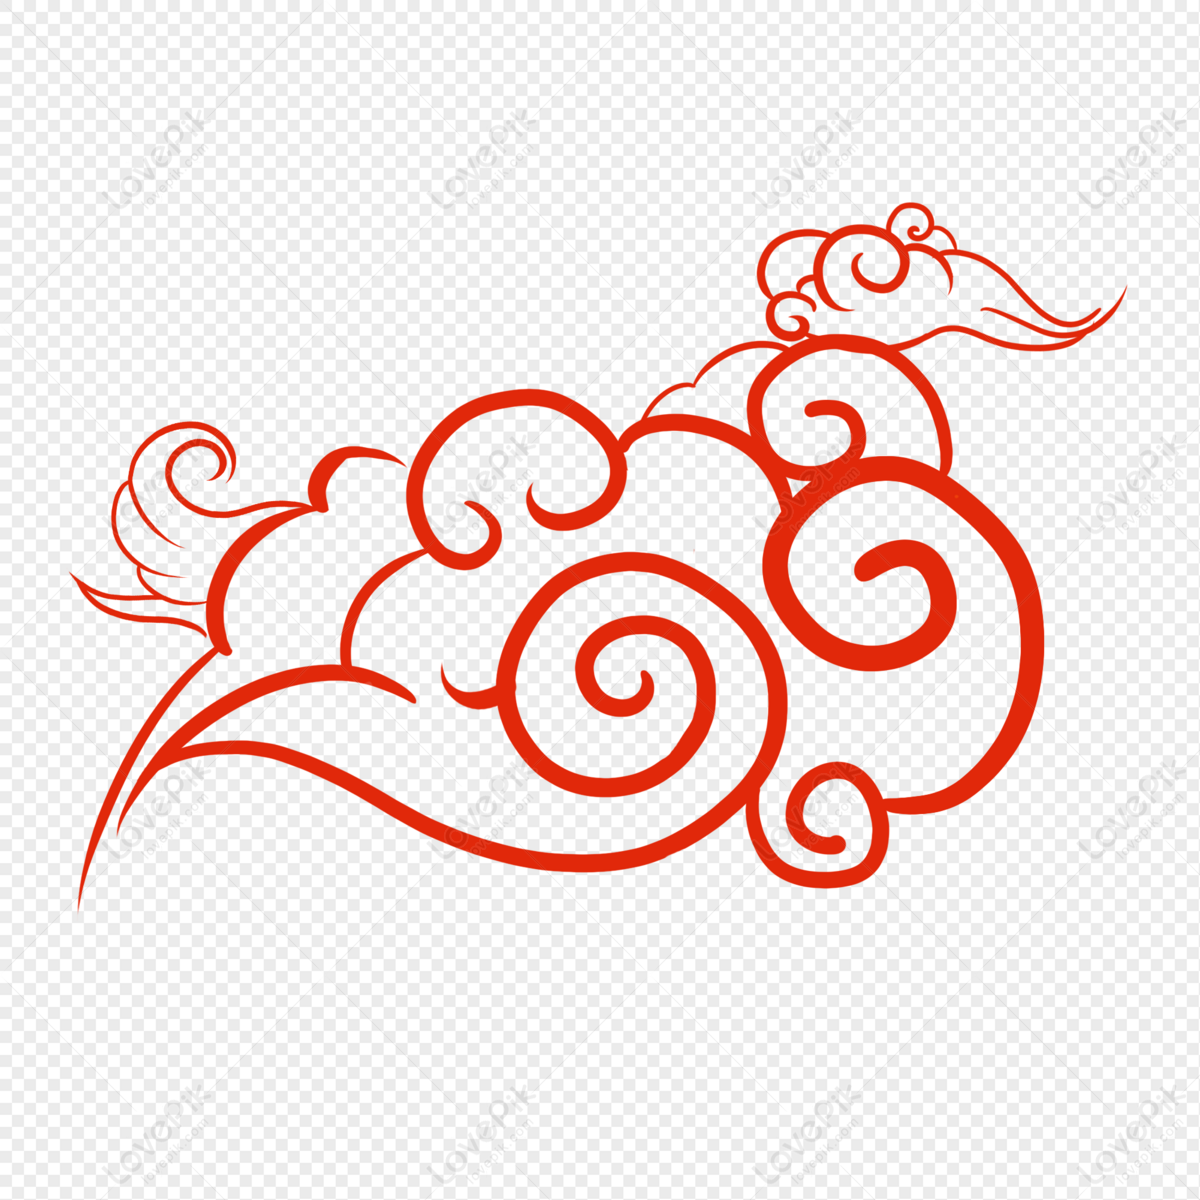 Elemento de nuvem de padrão chinês. silhueta vermelha de nuvens